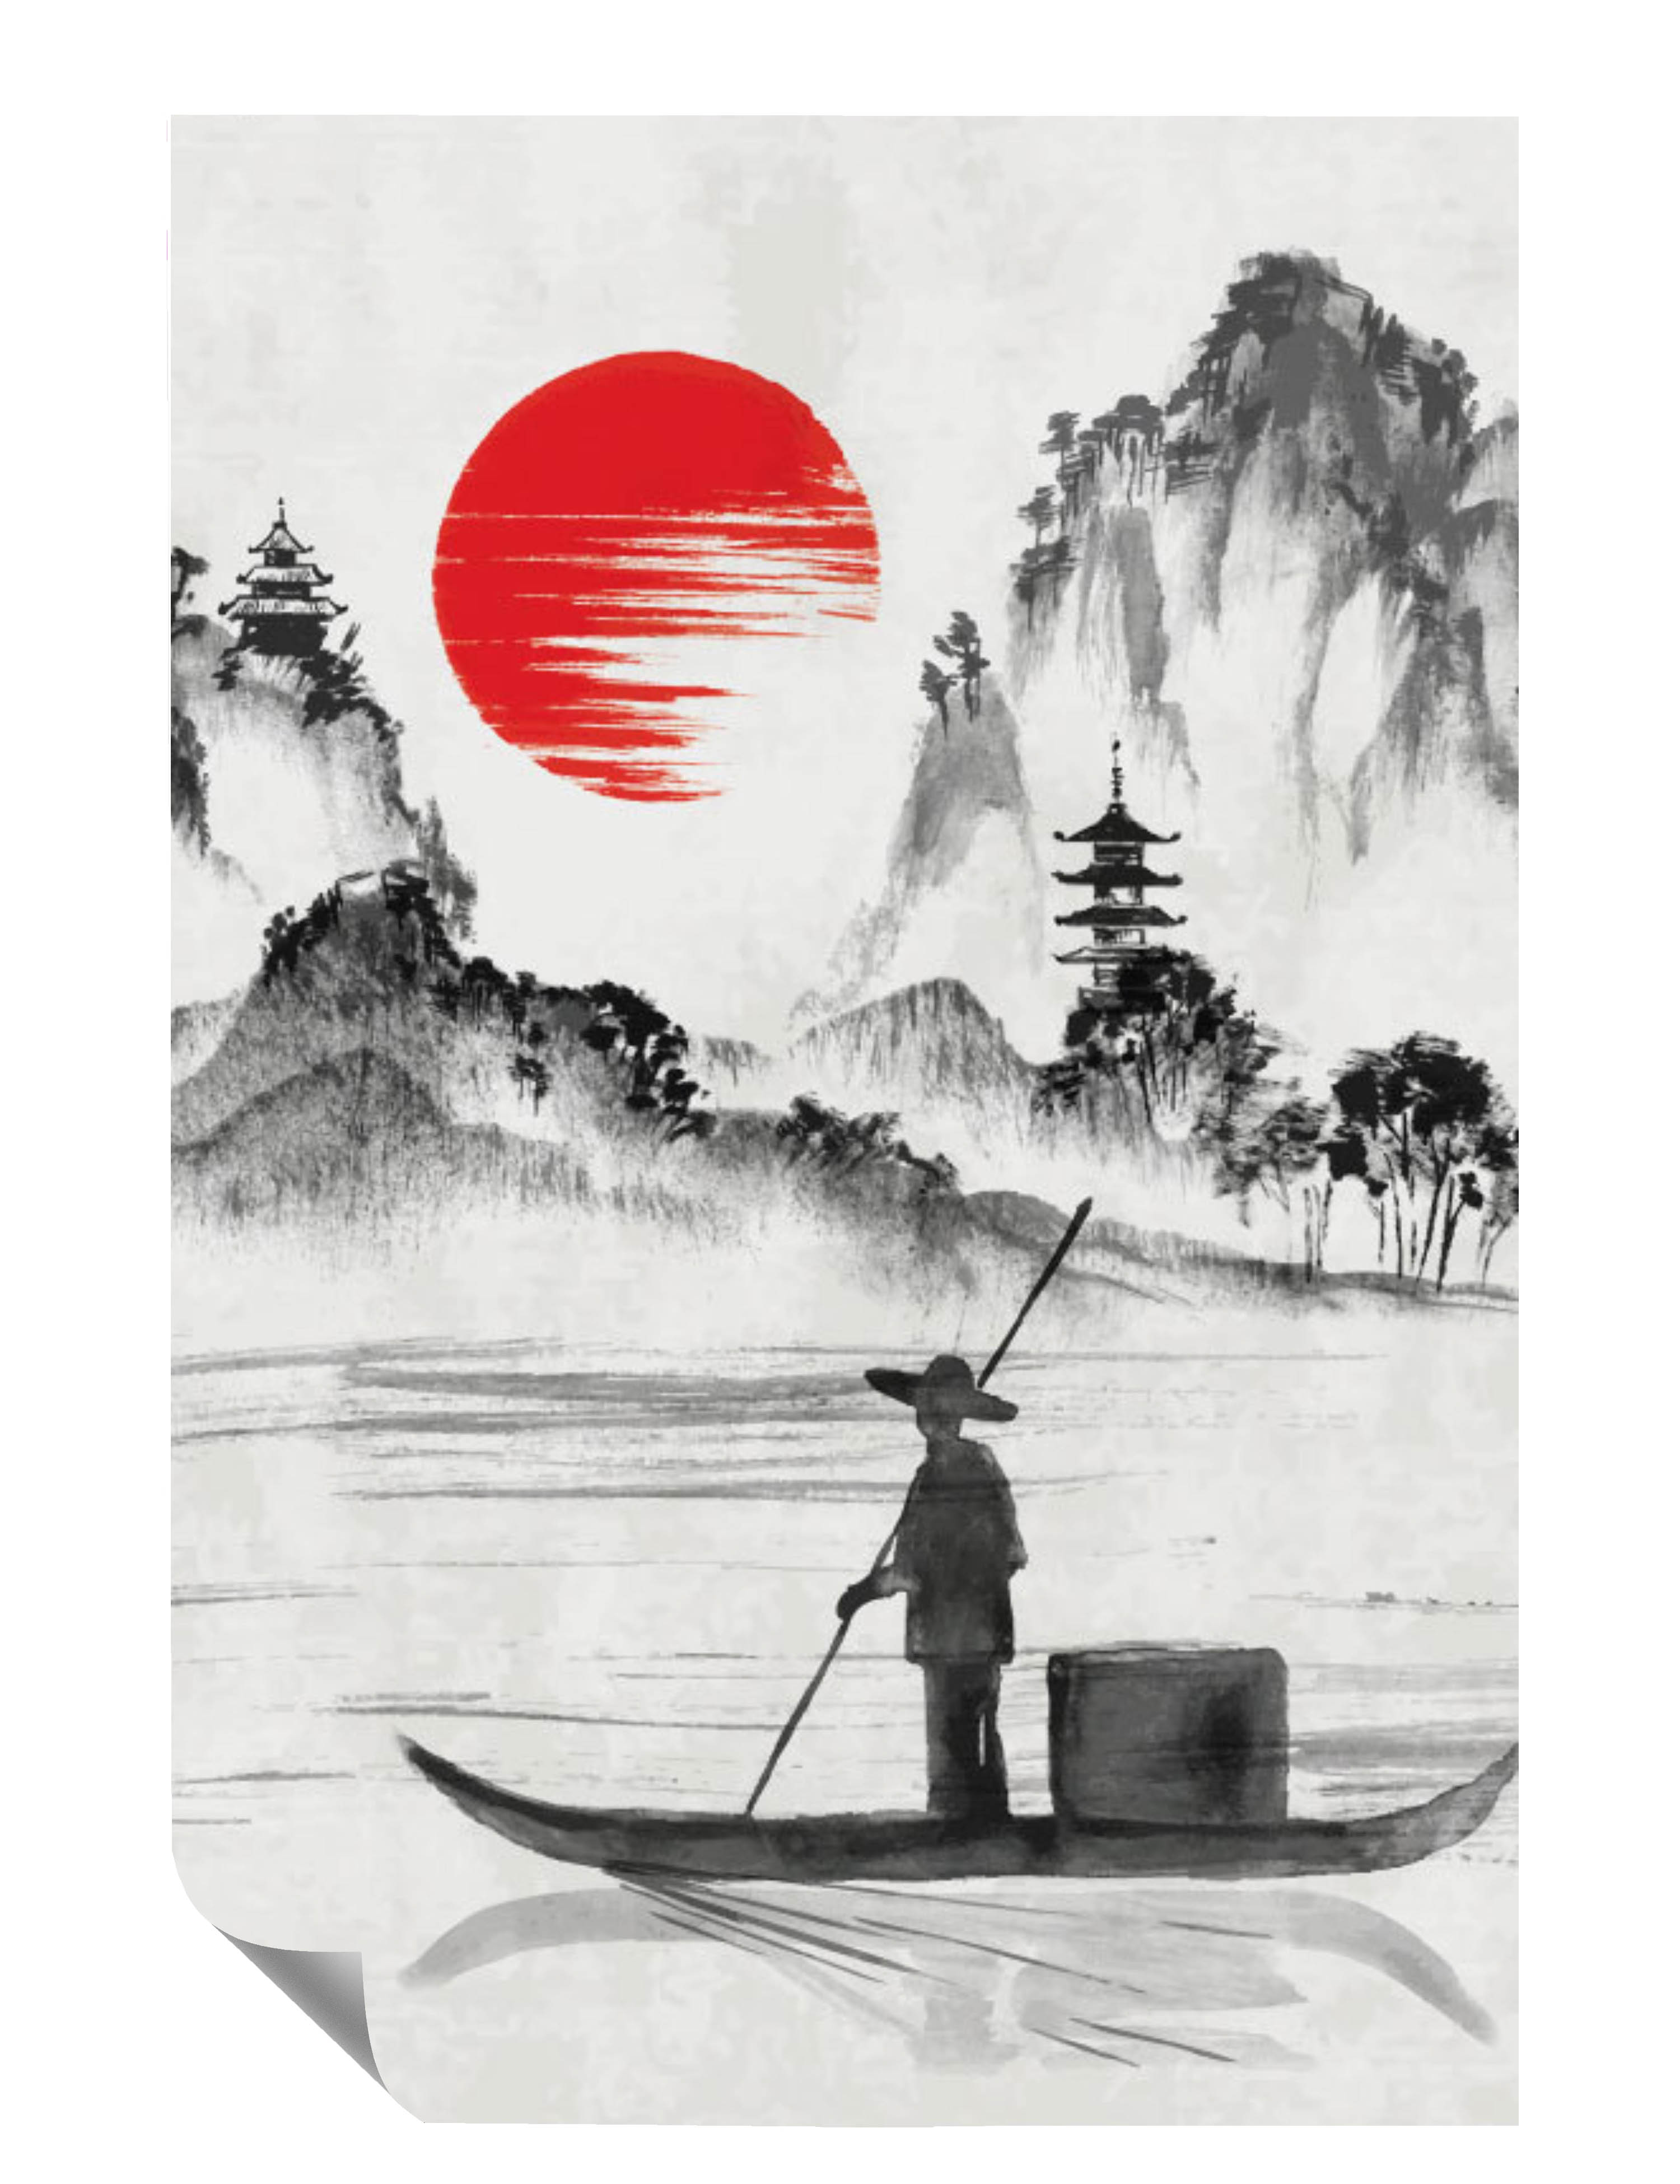 Bootfahrer Gebirge Sonne Asiatisches Gebäude Poster P0074